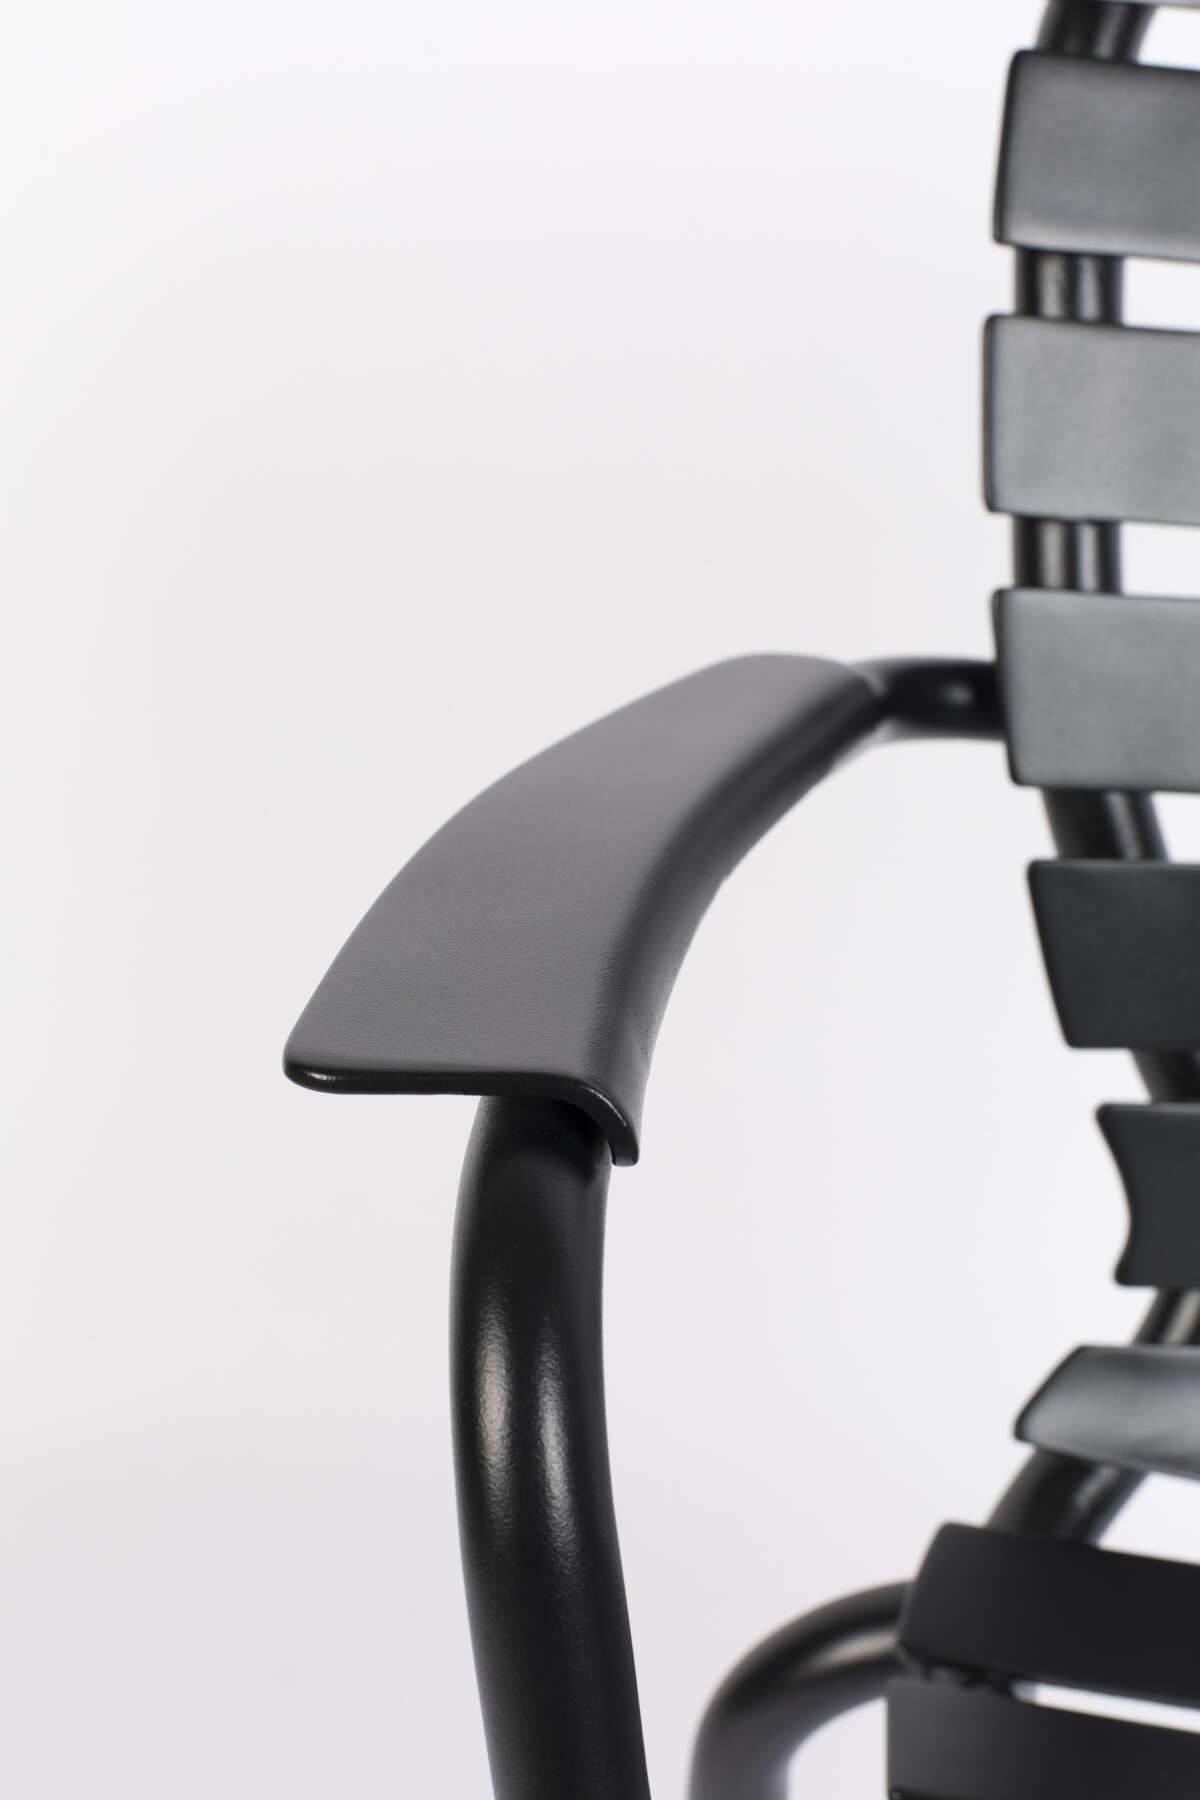 Krzesło ogrodowe z podłokietnikami VONDEL czarny Zuiver    Eye on Design